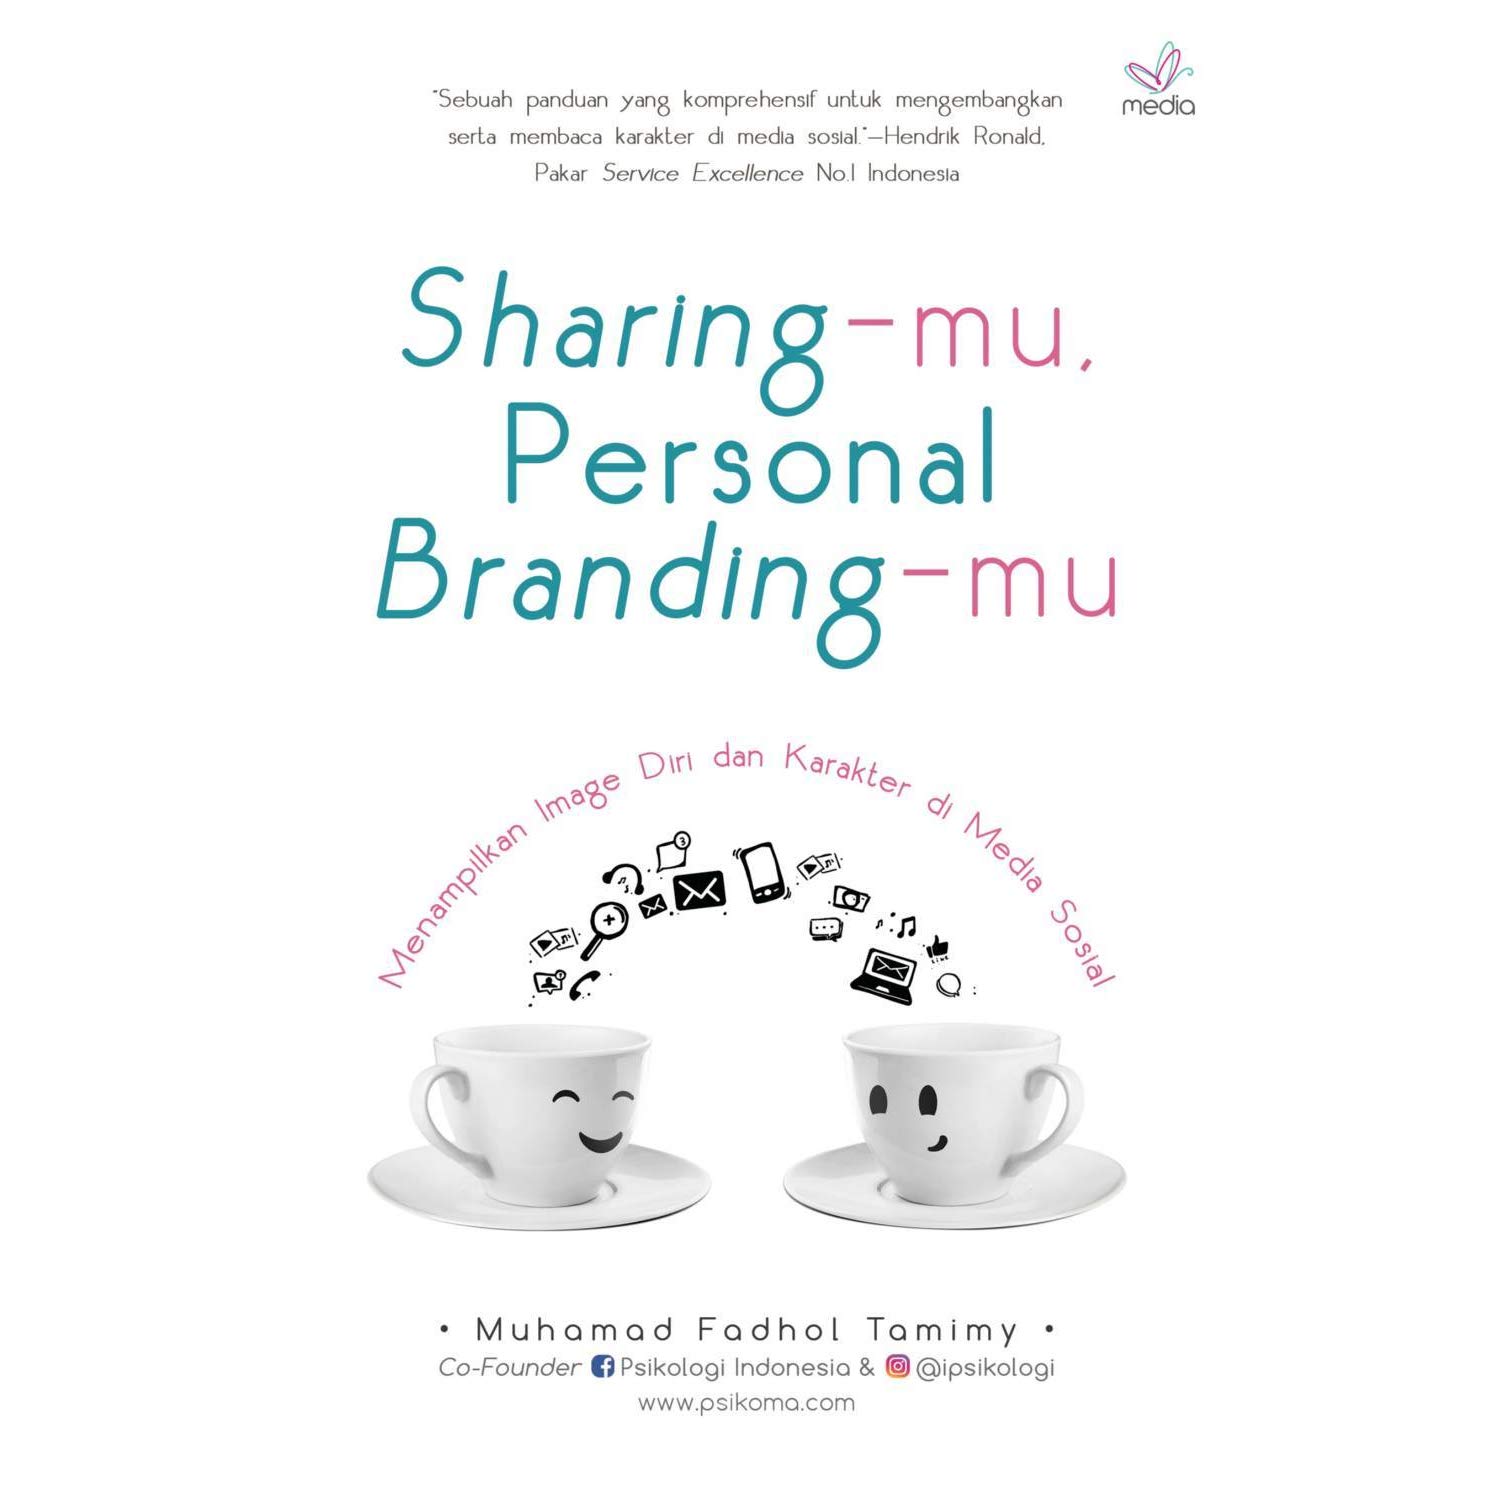 Sharing-mu, Personal Branding-mu